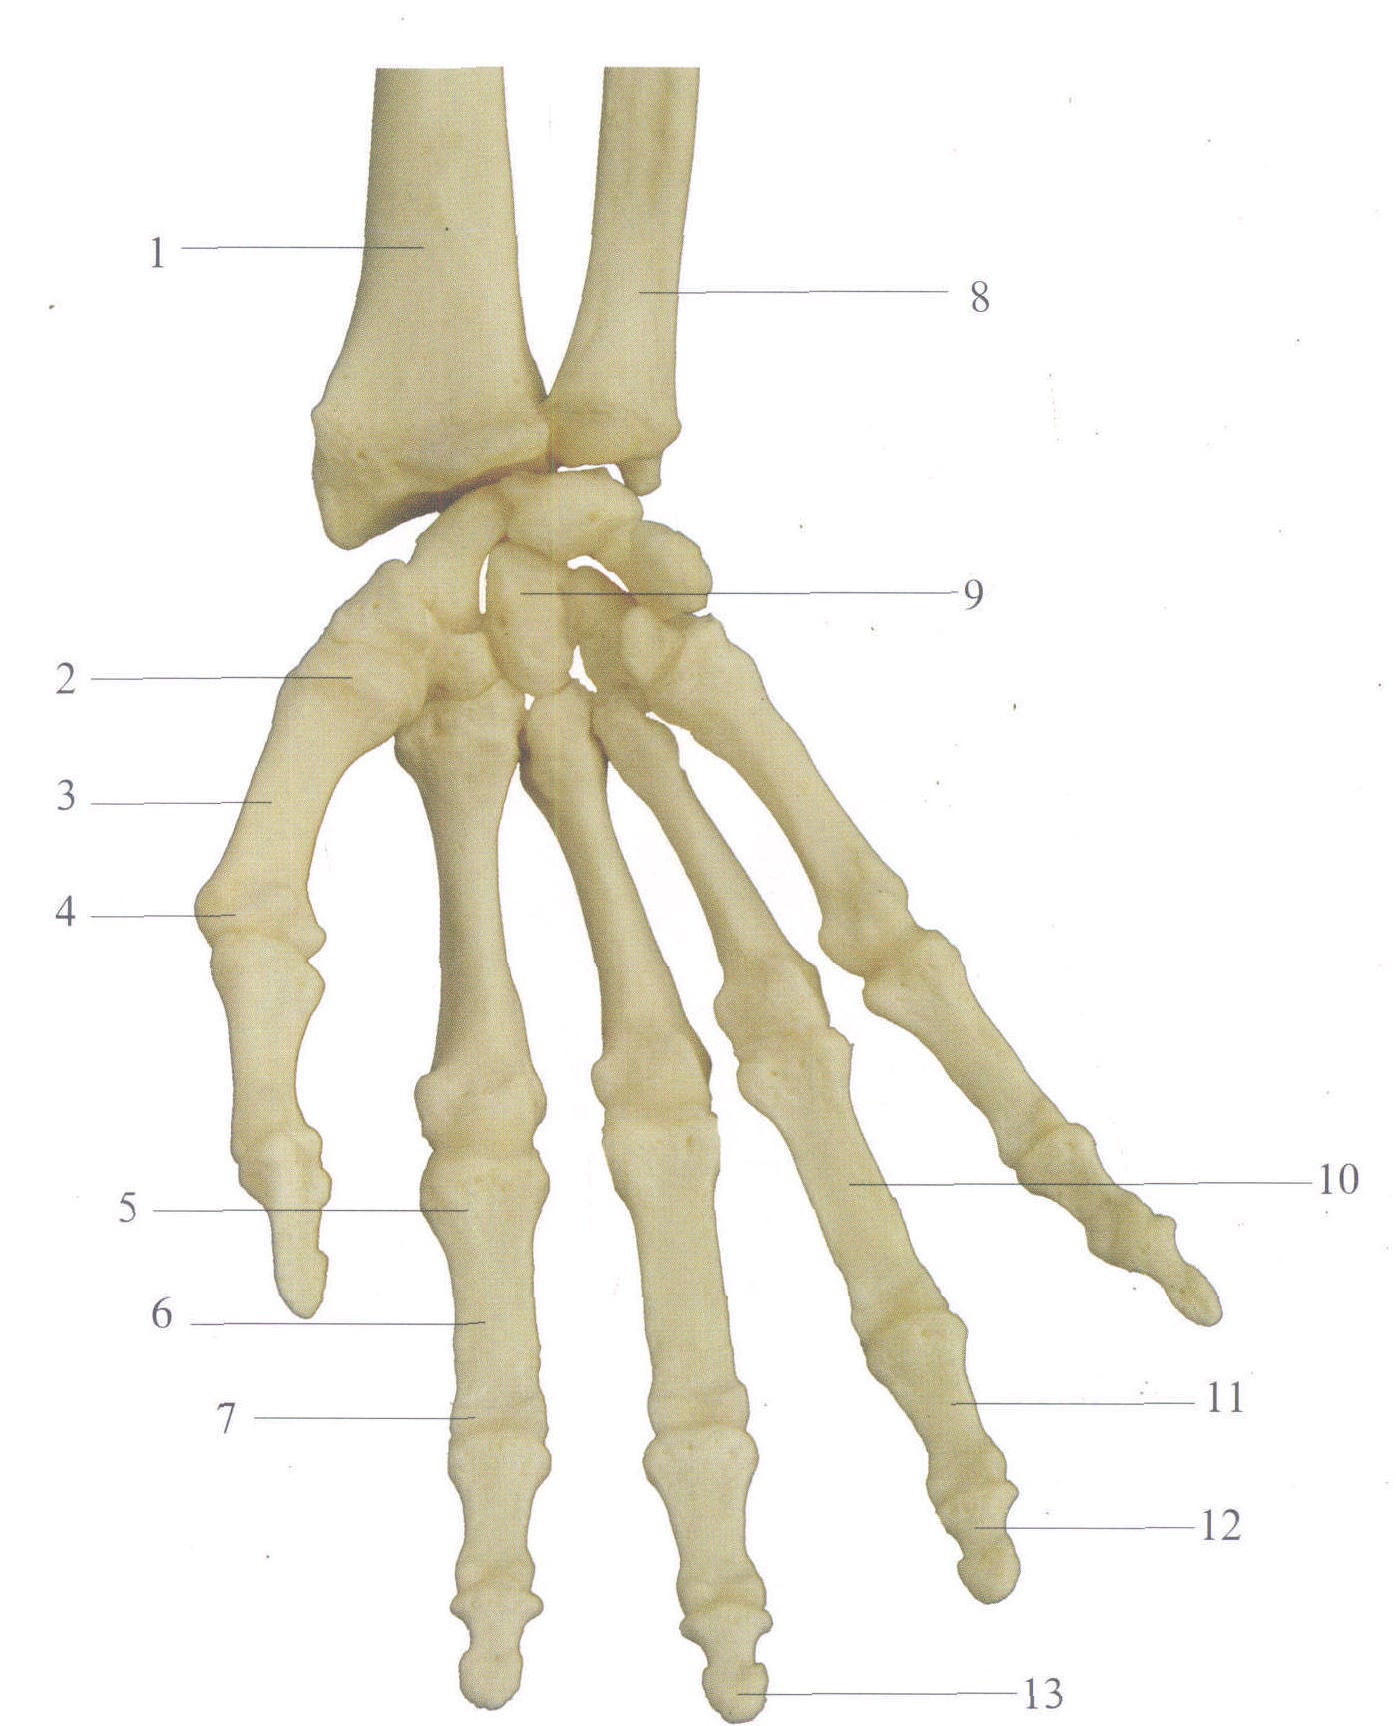 右手骨骼结构图图片